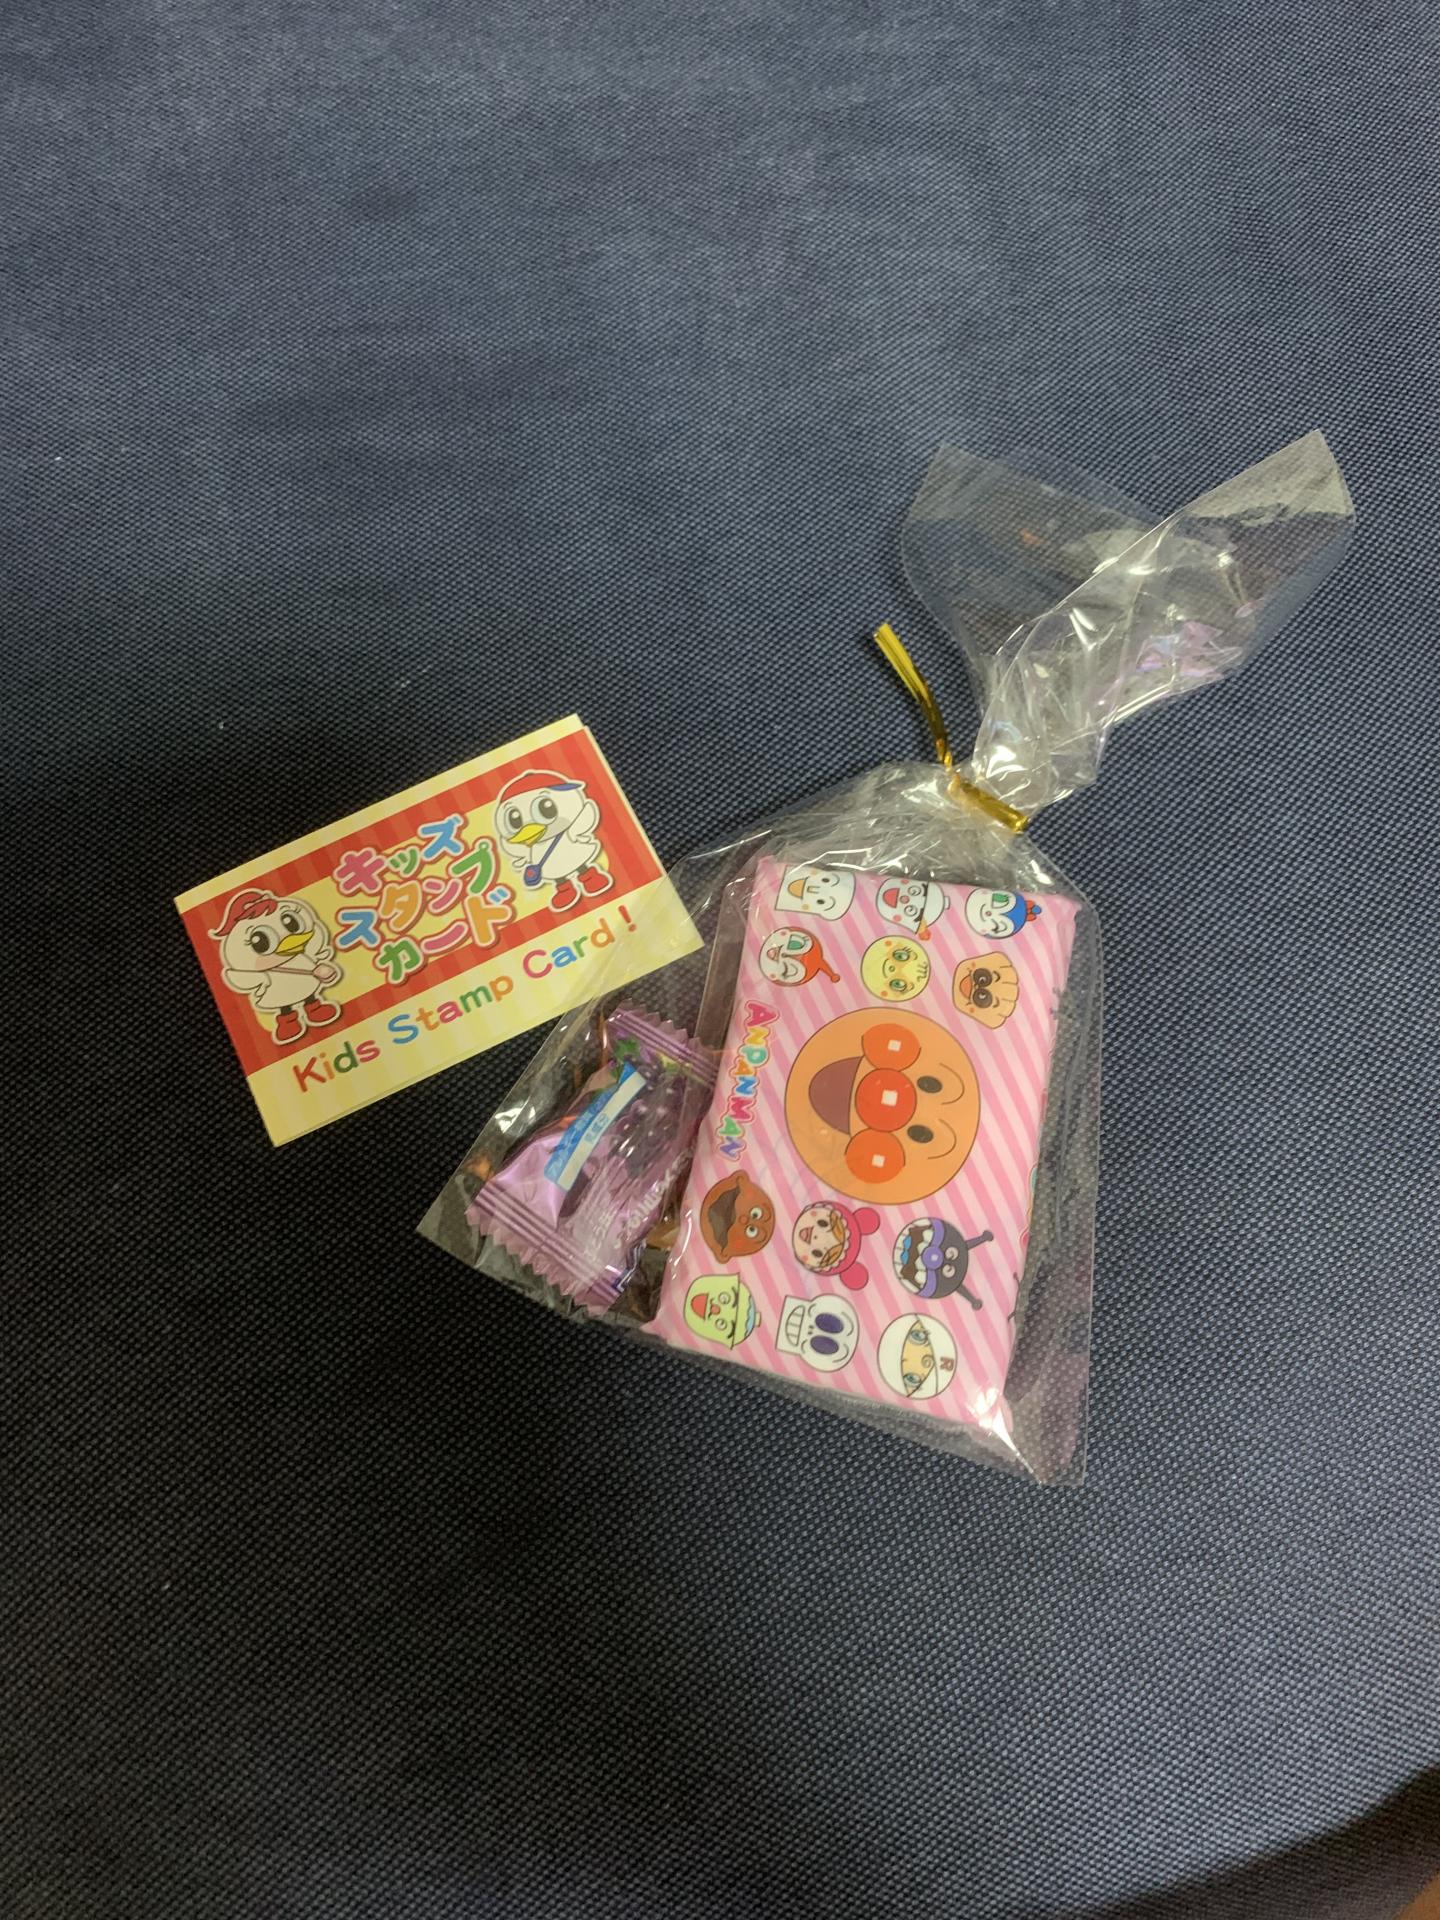  キッズスタンプカードと景品のお菓子の写真[559KB]